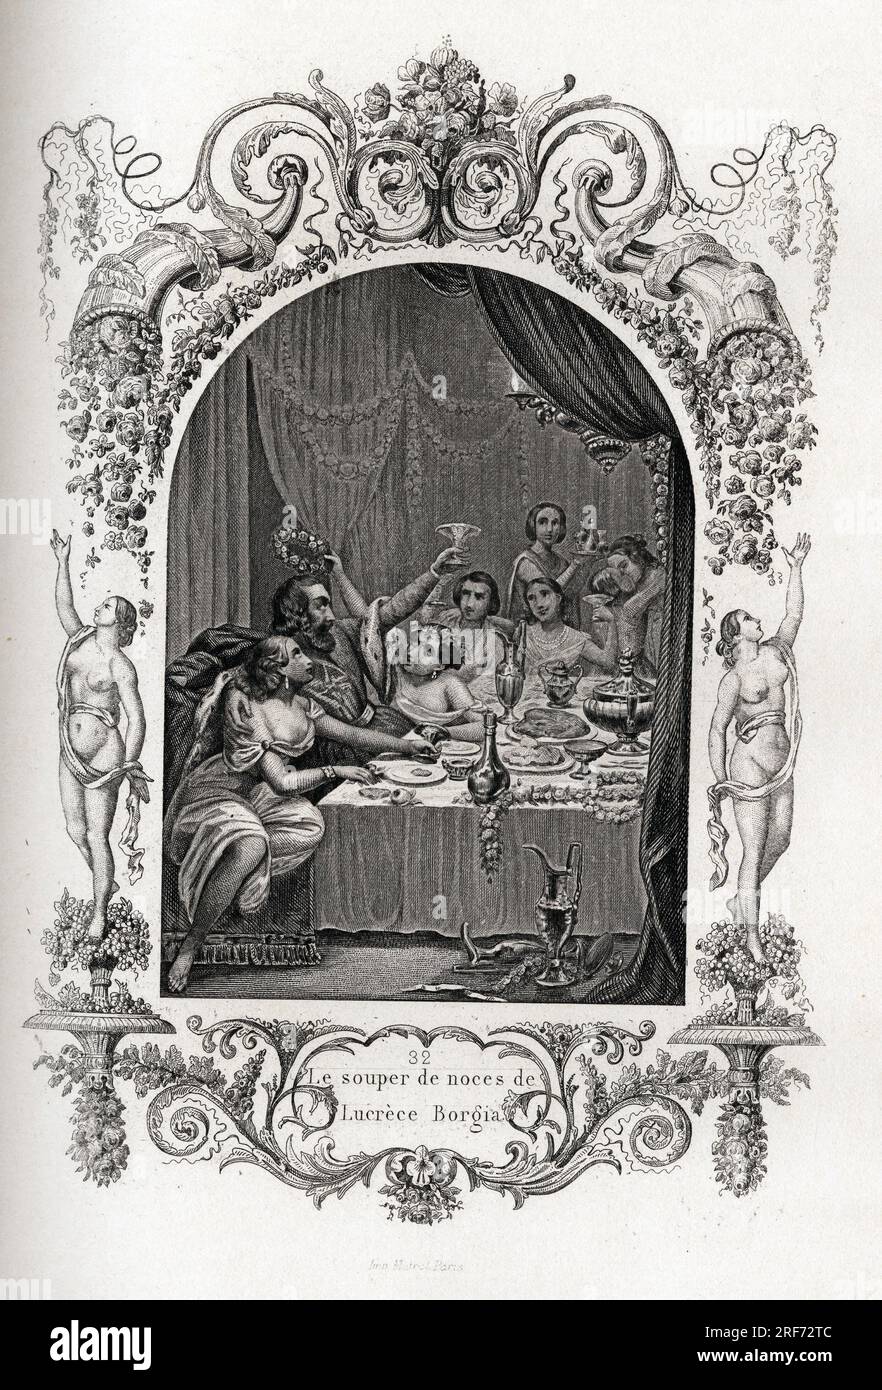 Le souper de noces de Lucrece Borgia (Lucrezia) (1480-1519). Gravure pour illustrer Histoire des papes par Maurice Lachatre (1814-1900), librairie du progres, Paris. Stock Photo